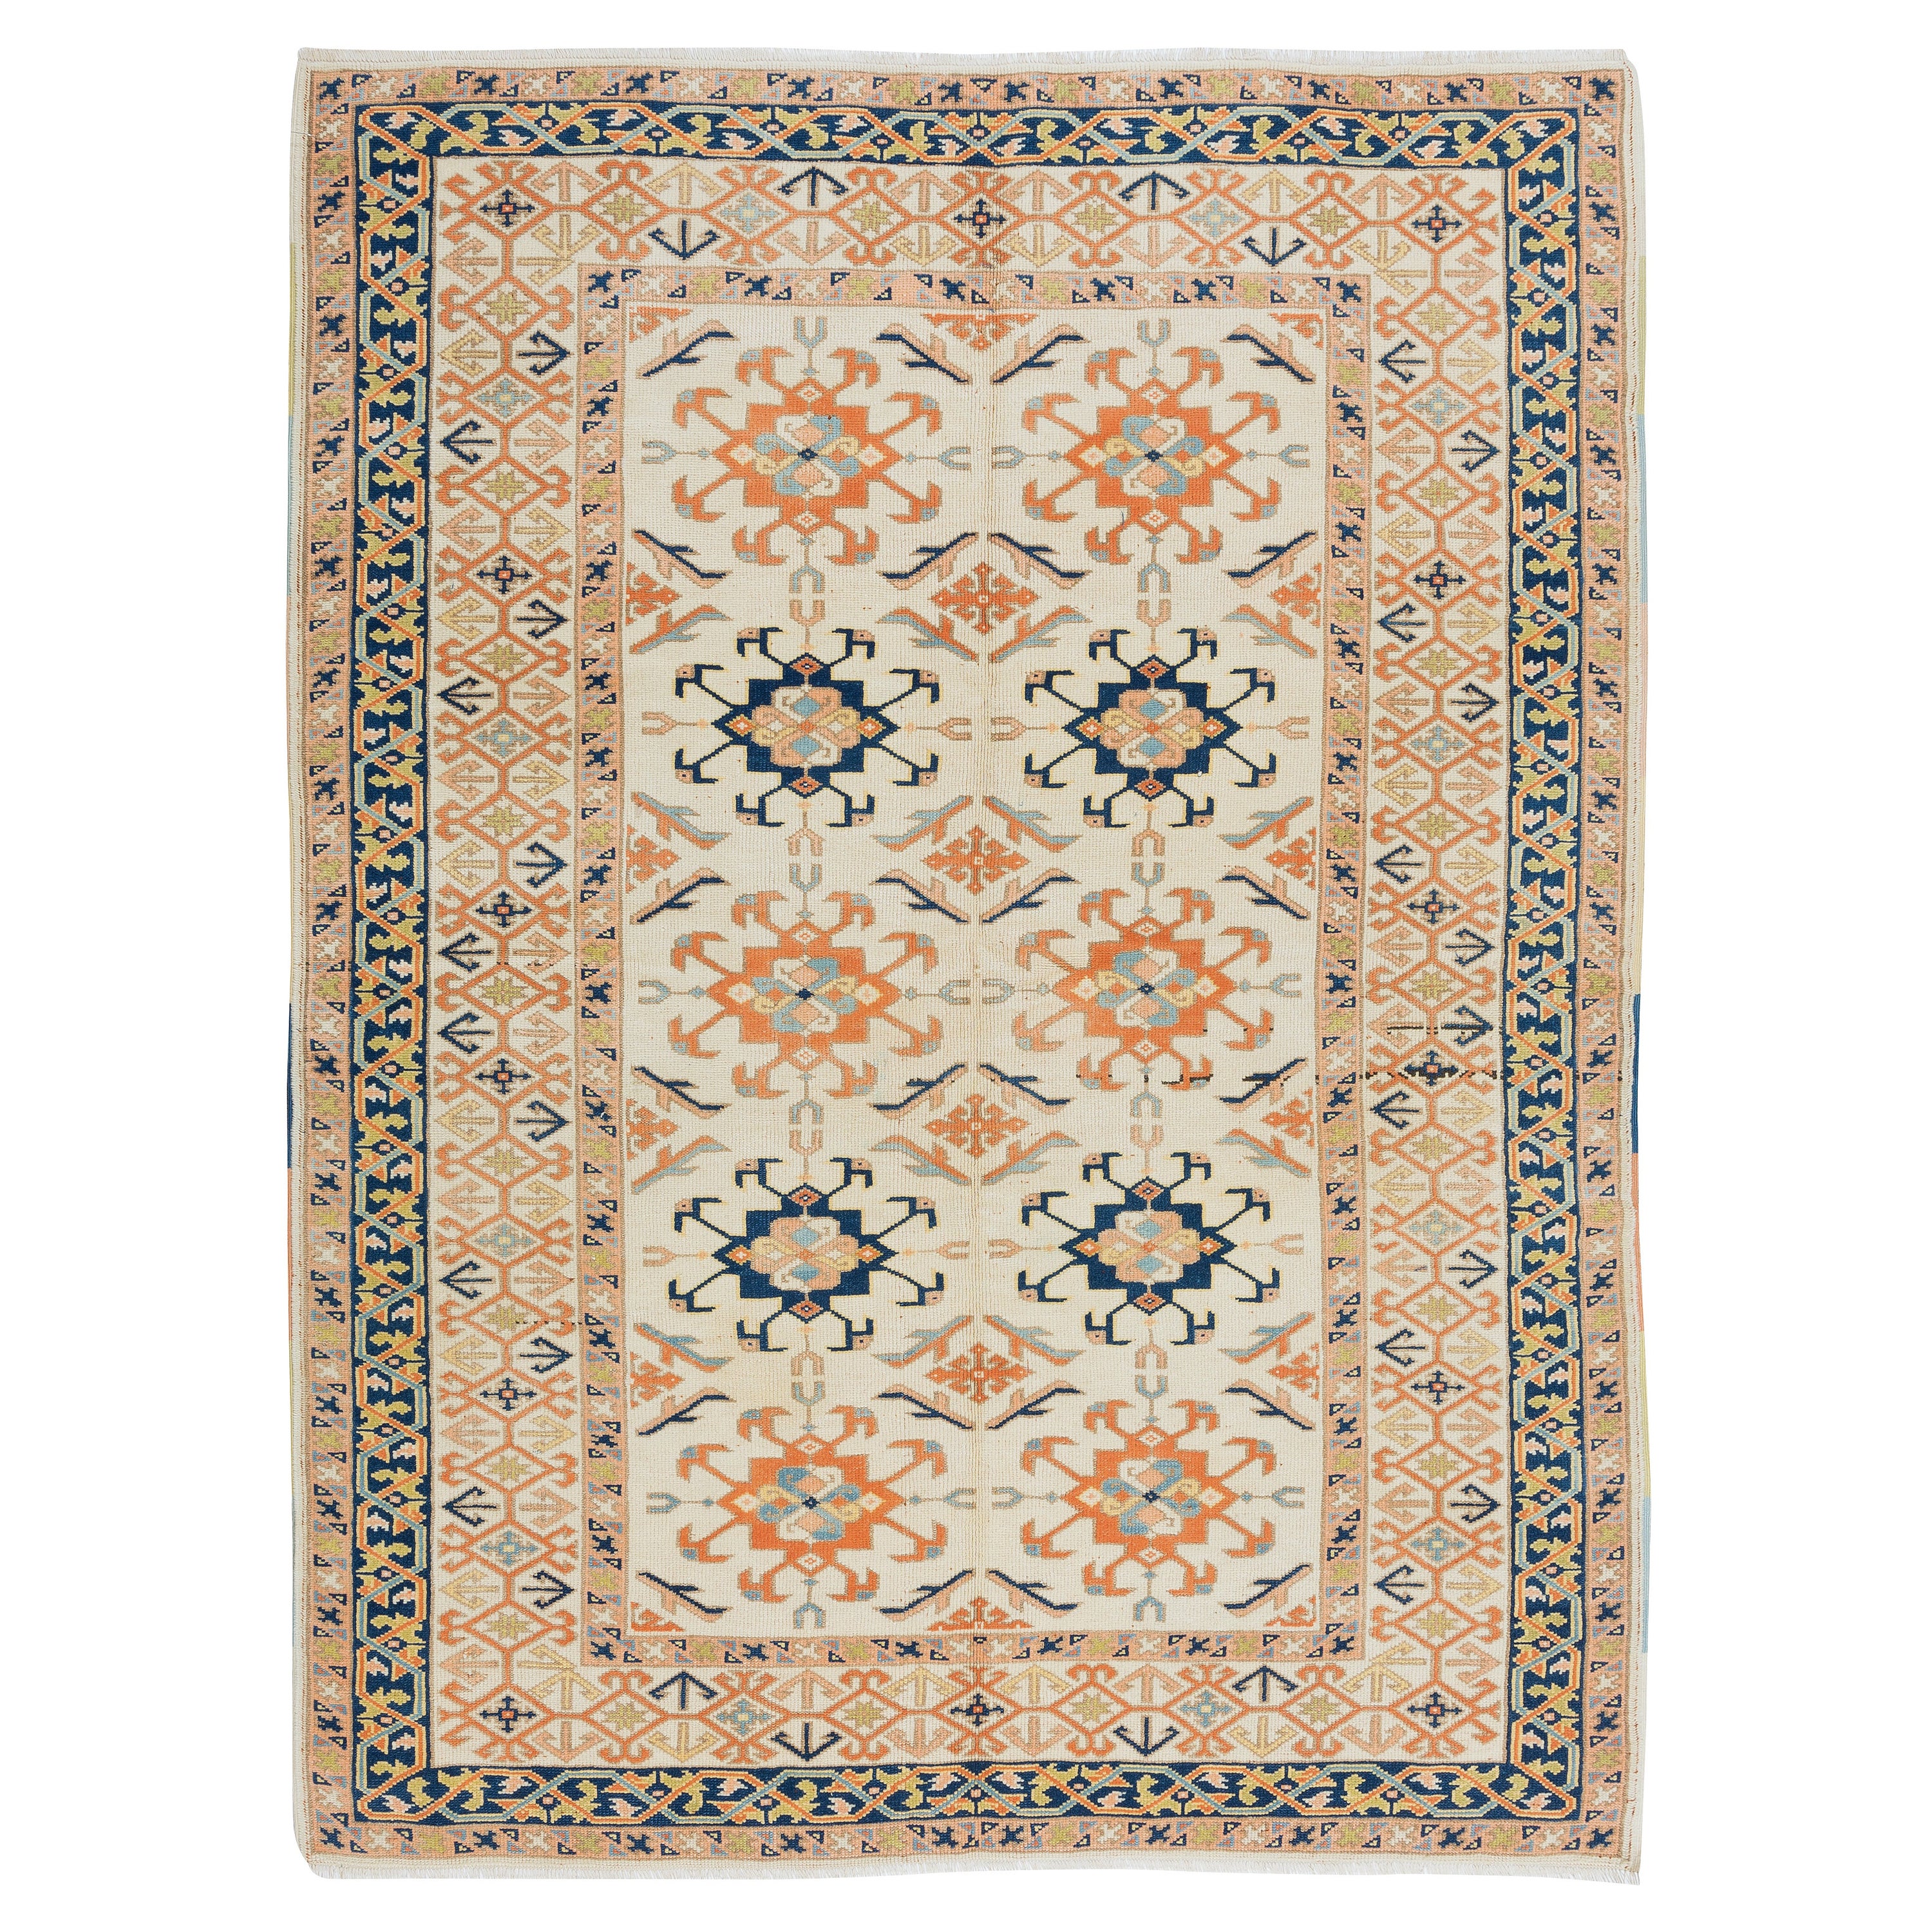 Handgefertigter Teppich 5.2x7 Ft, moderner türkischer Teppich für das Wohnzimmer, 100 % Wolle